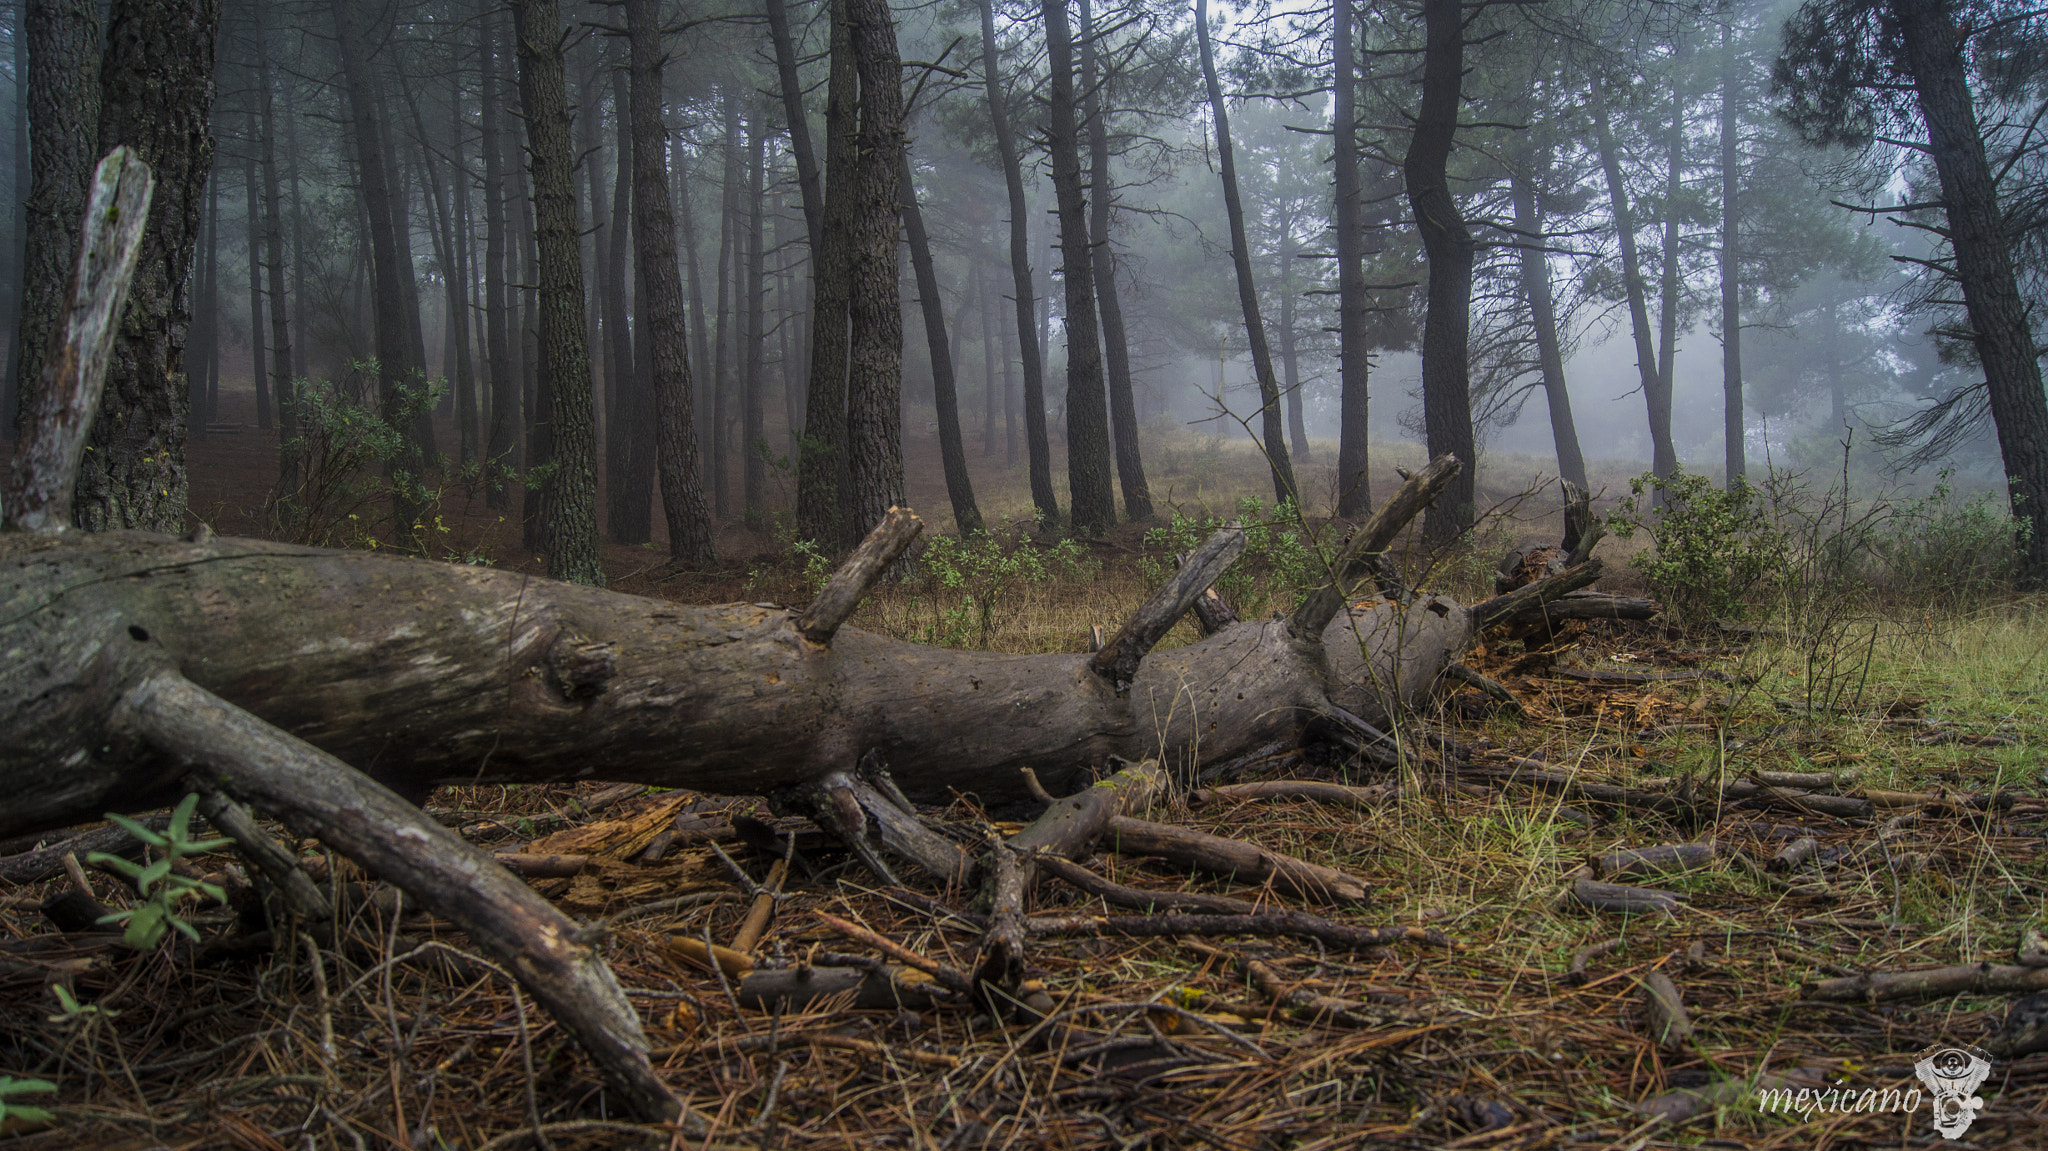 Sony Alpha DSLR-A580 sample photo. Niebla en el bosque photography